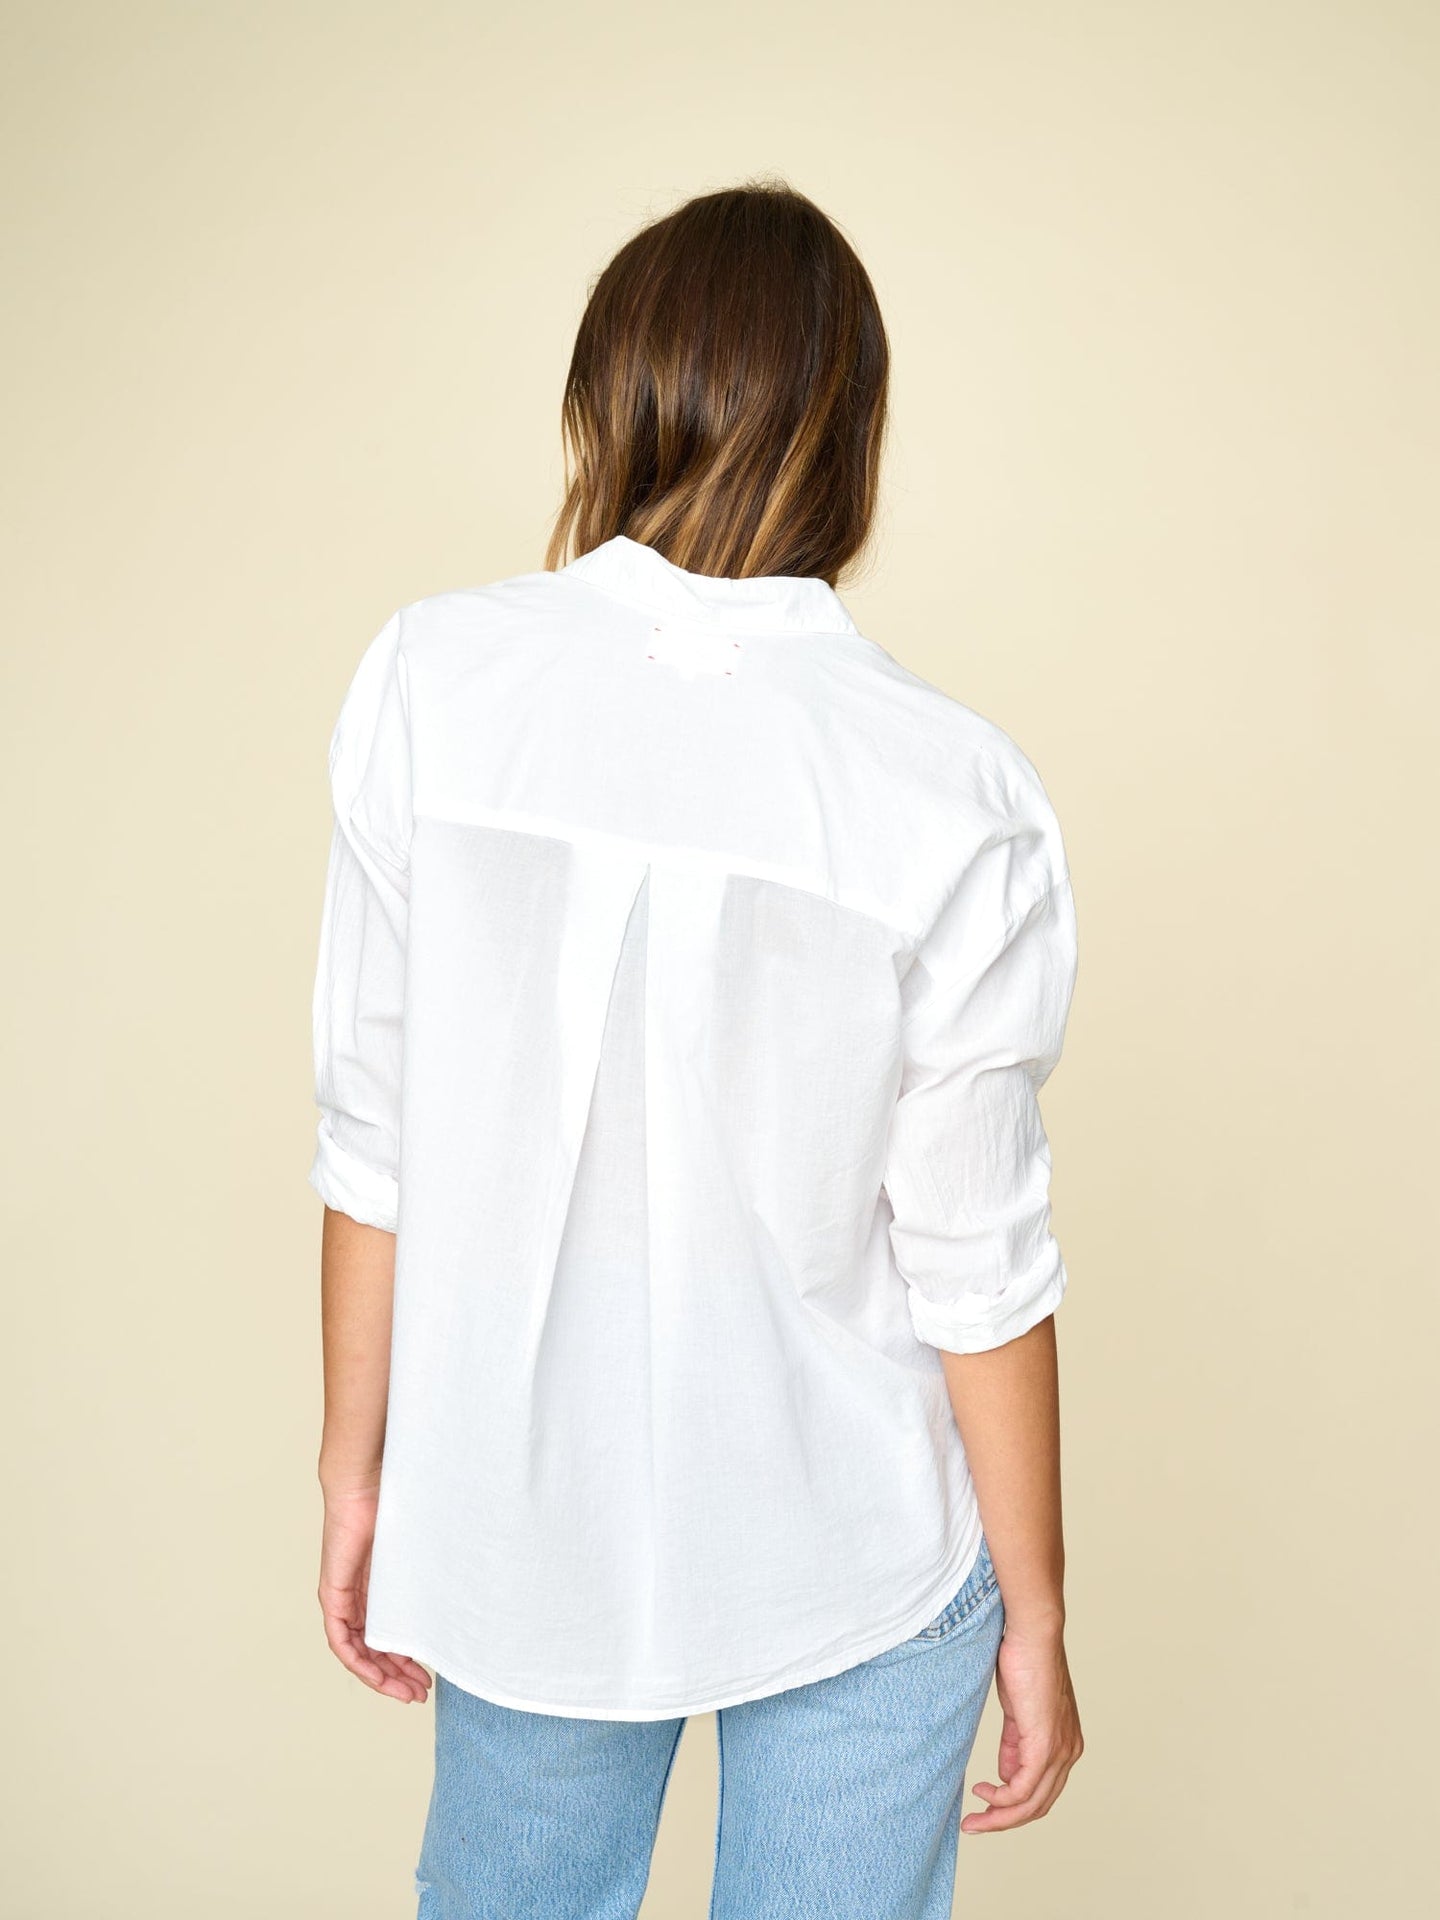 Shirt X355118 Jace Shirt White